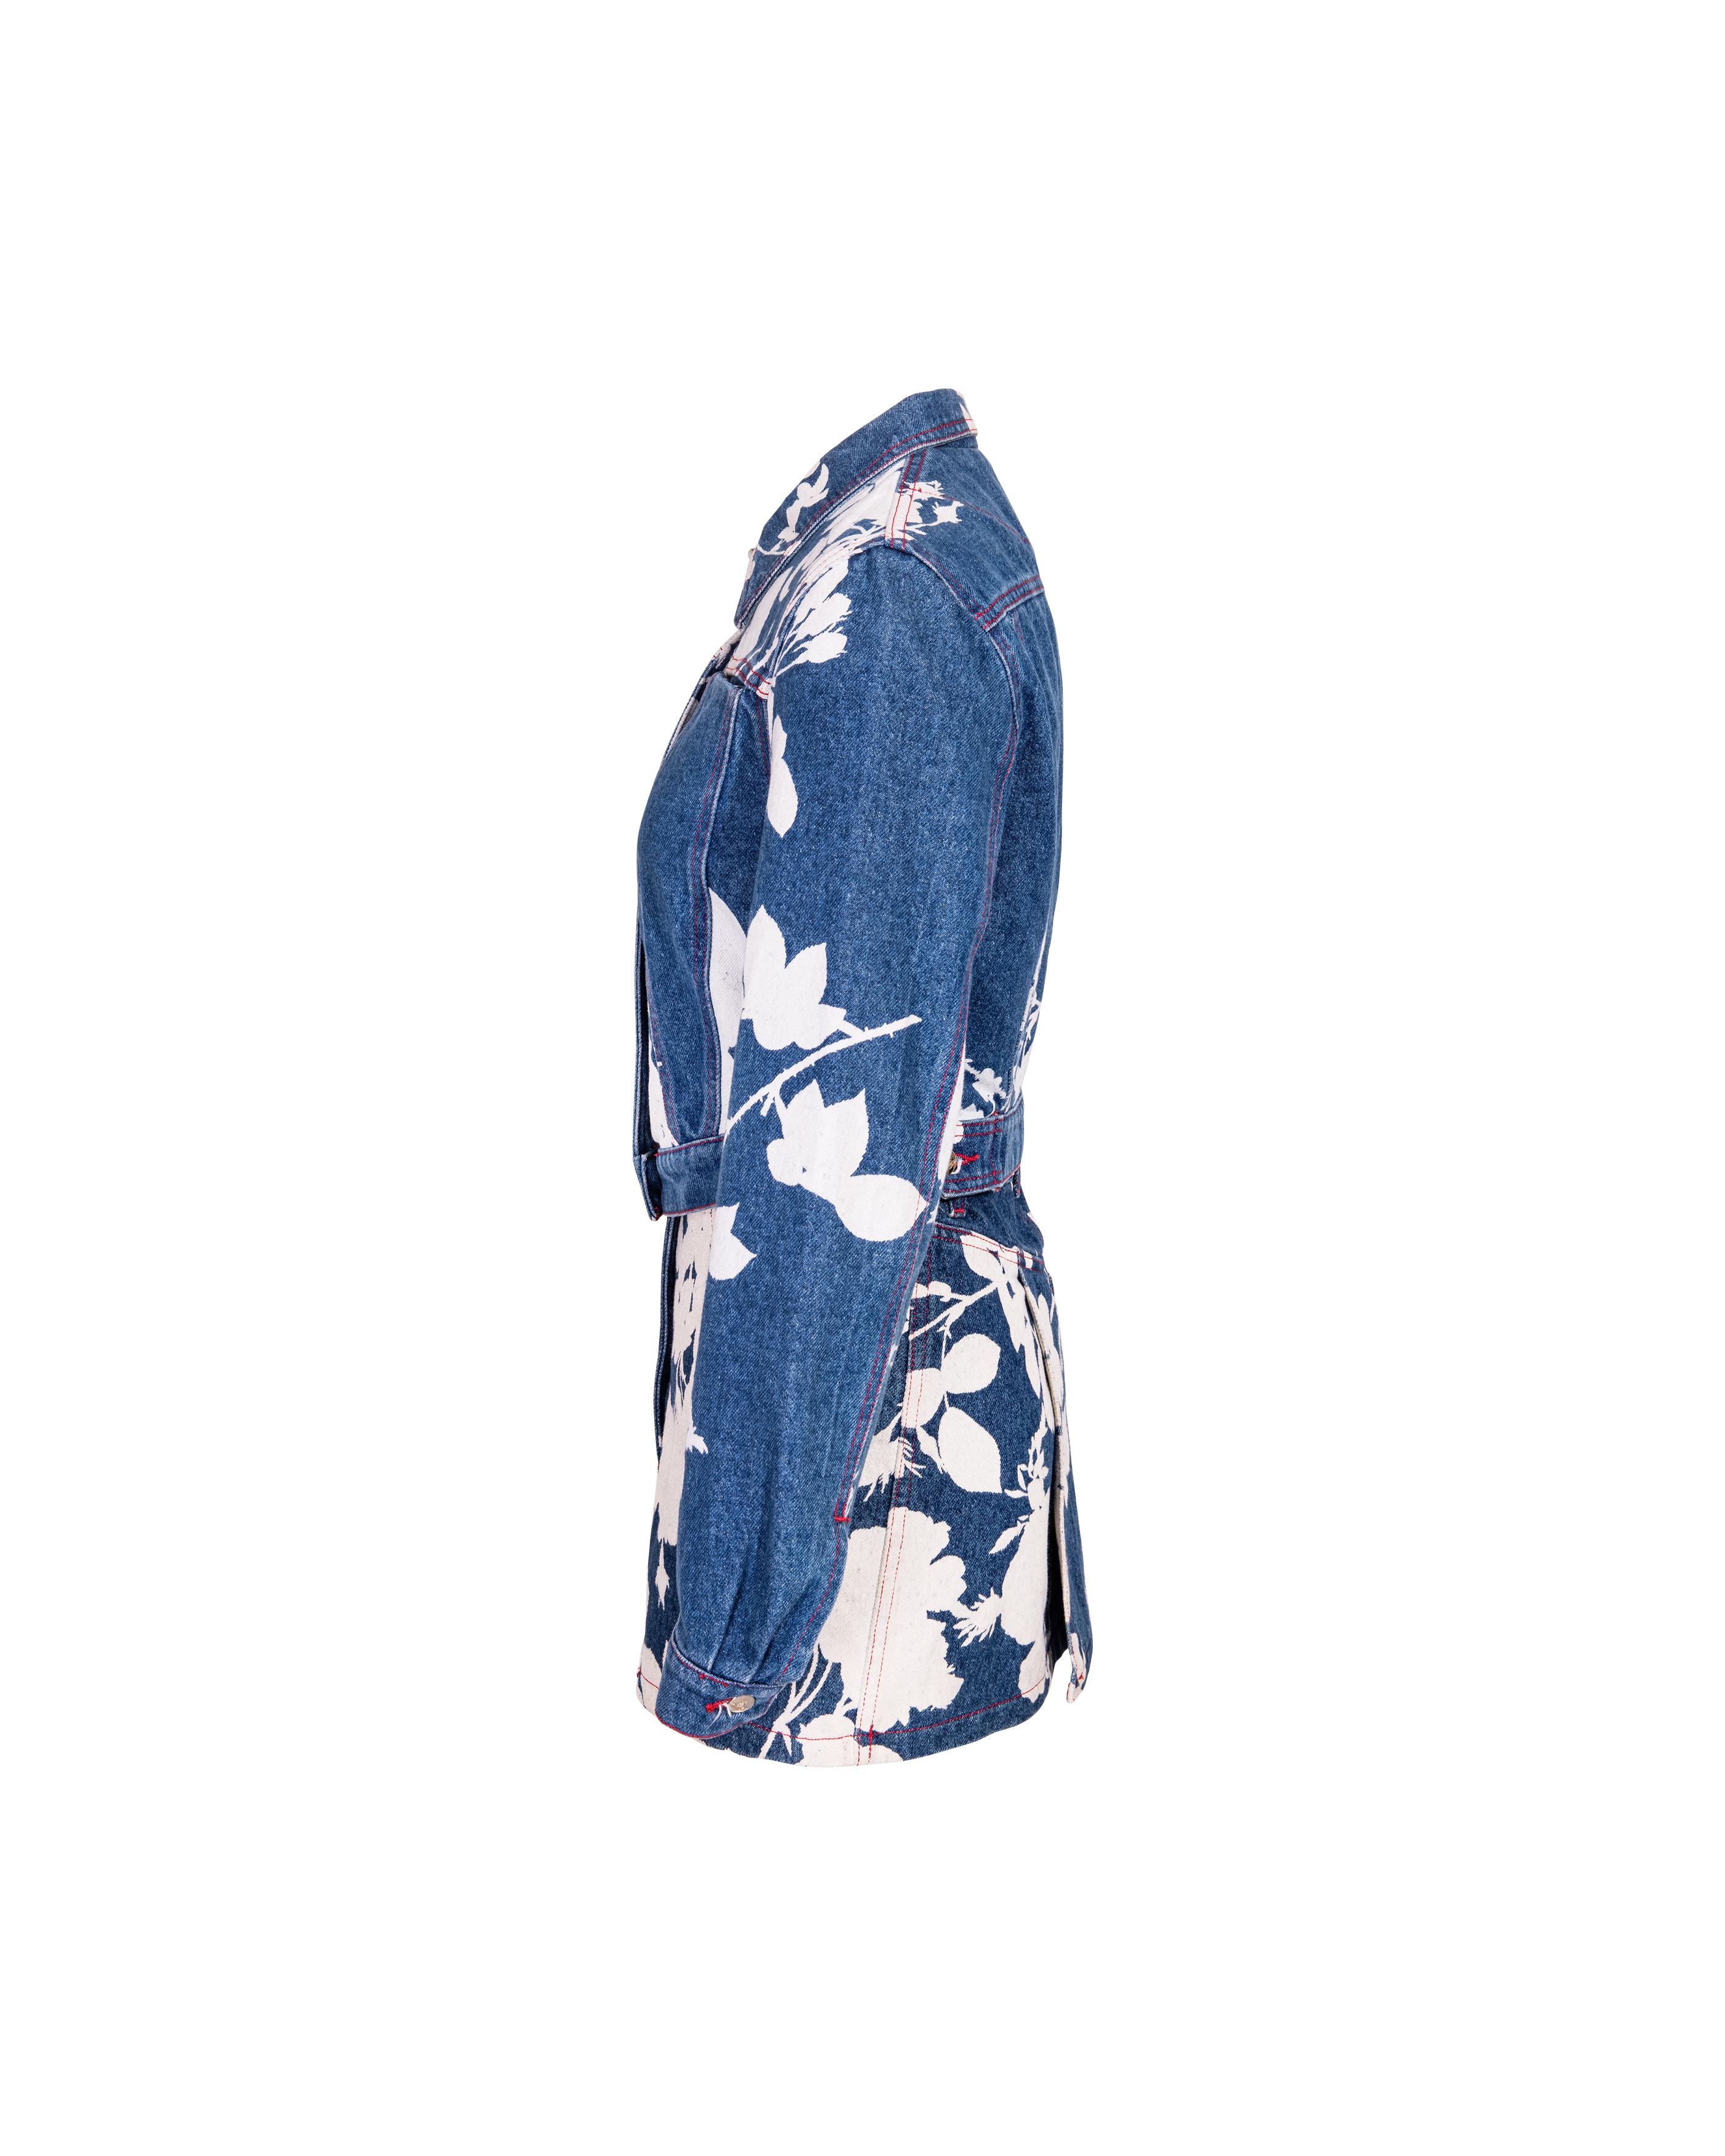 Ensemble jupe en denim de la Collection S/S 1994 de Vivienne Westwood 'Cafe Society', avec motif floral blanchi sur toute la longueur. La veste en denim de coton à col boutonné et à manches longues s'associe à la mini-jupe en denim assortie. La